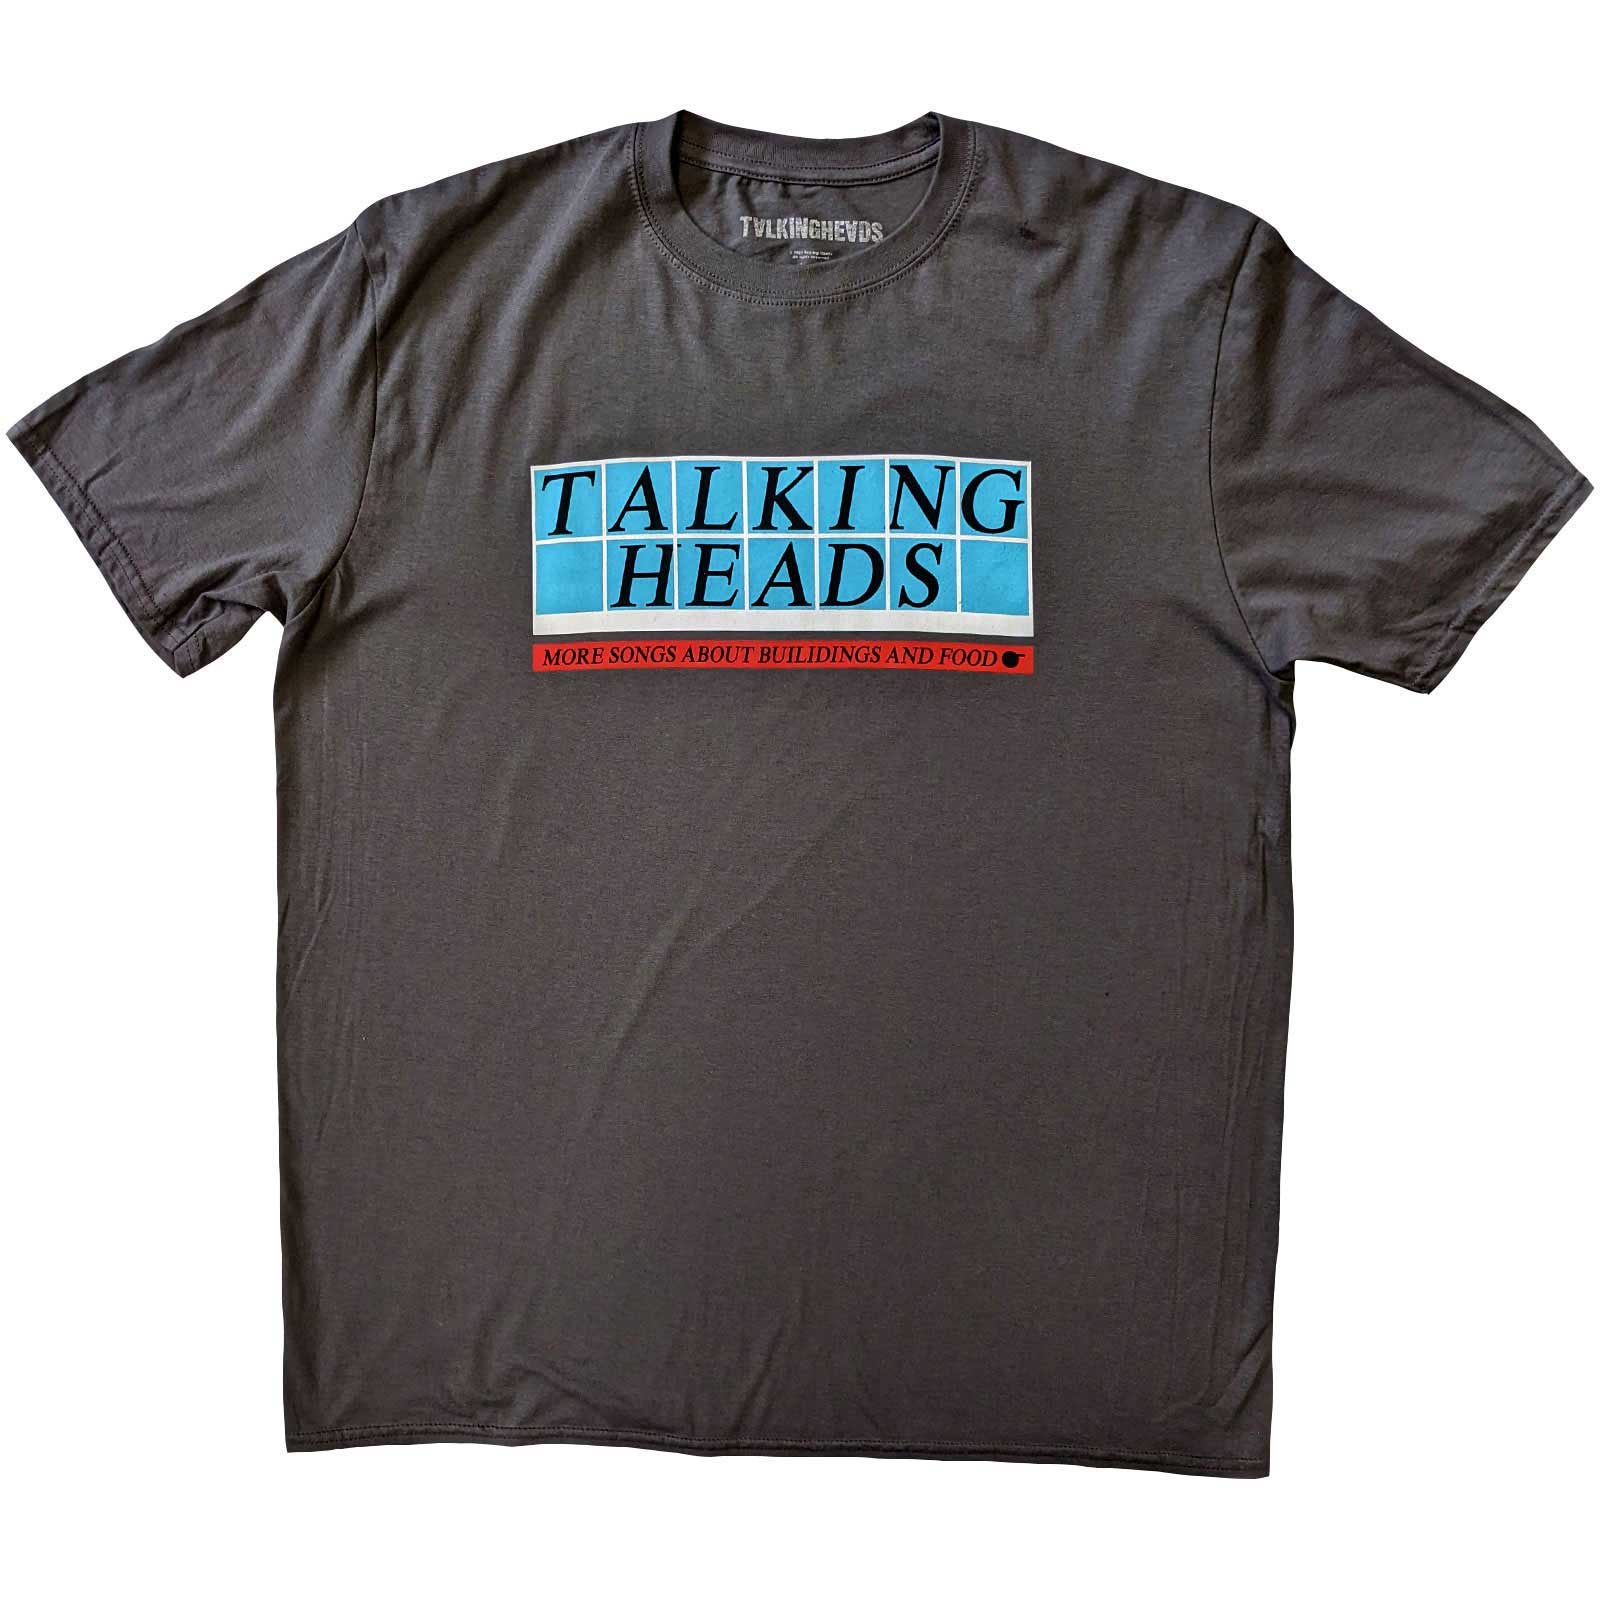 Talking Heads T-Shirt - Tiled Logo (Unisex)